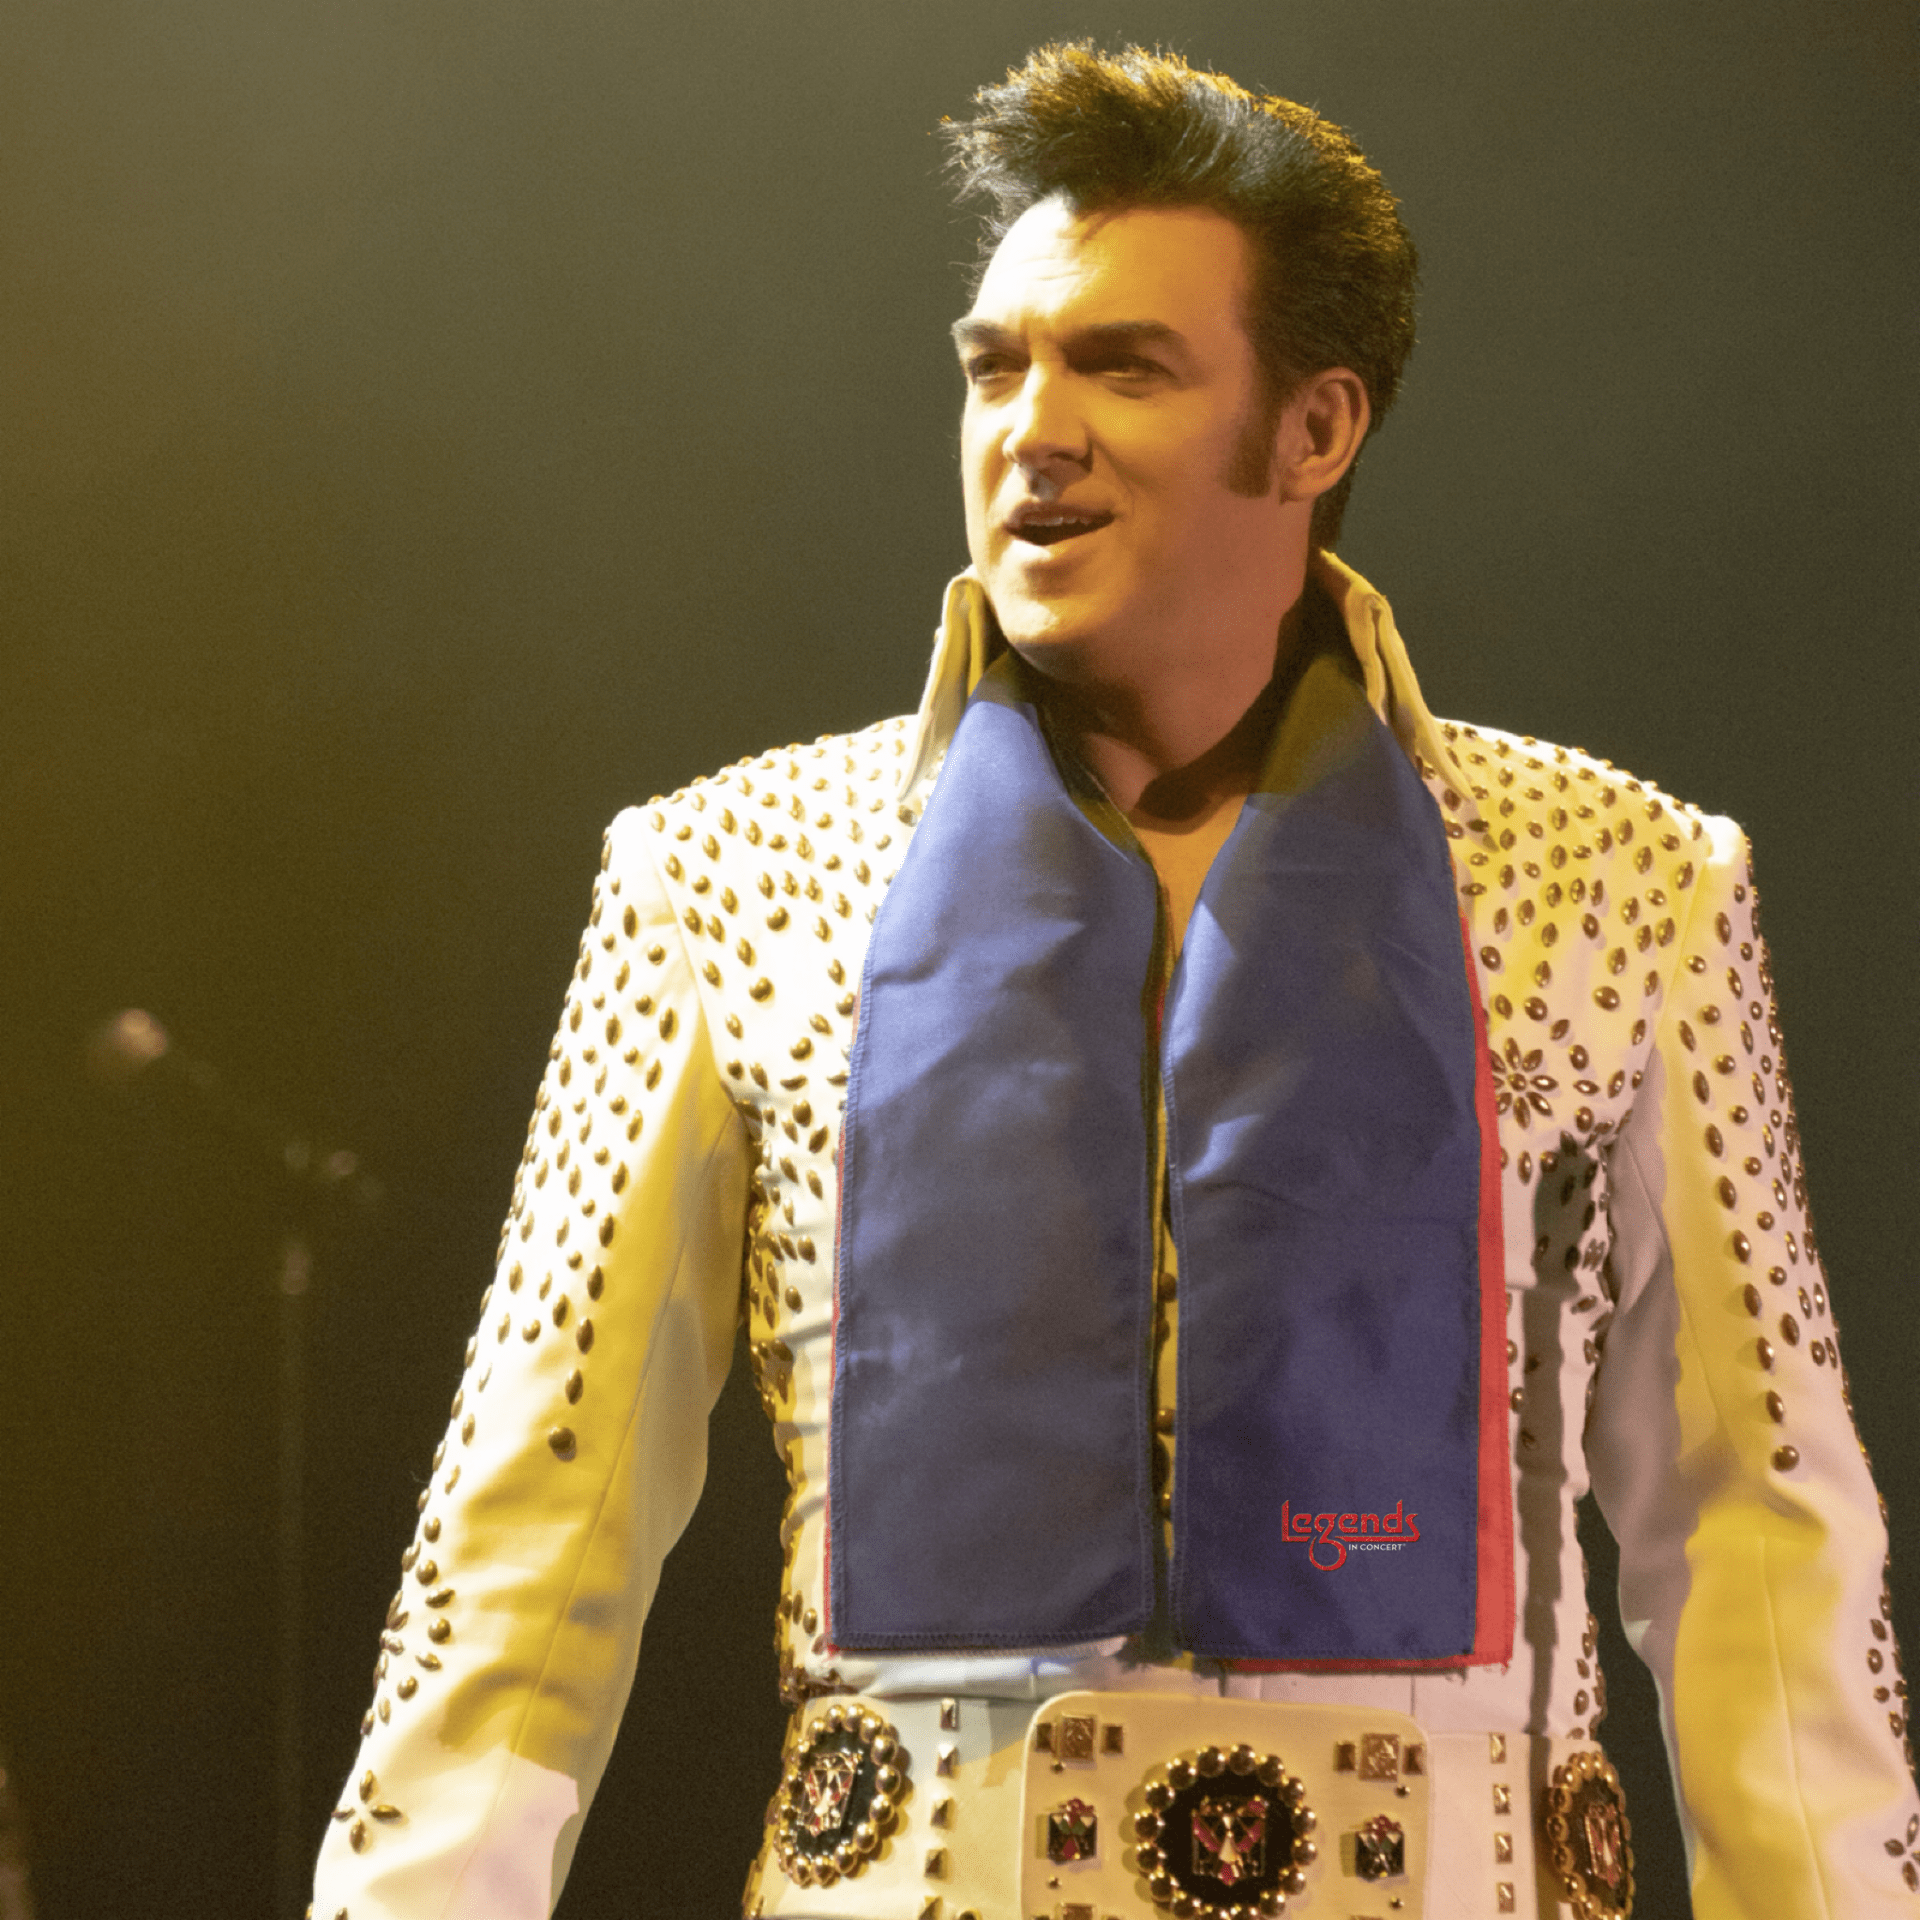 Legends in Concert Matt Lewis Tribute to Elvis Presley